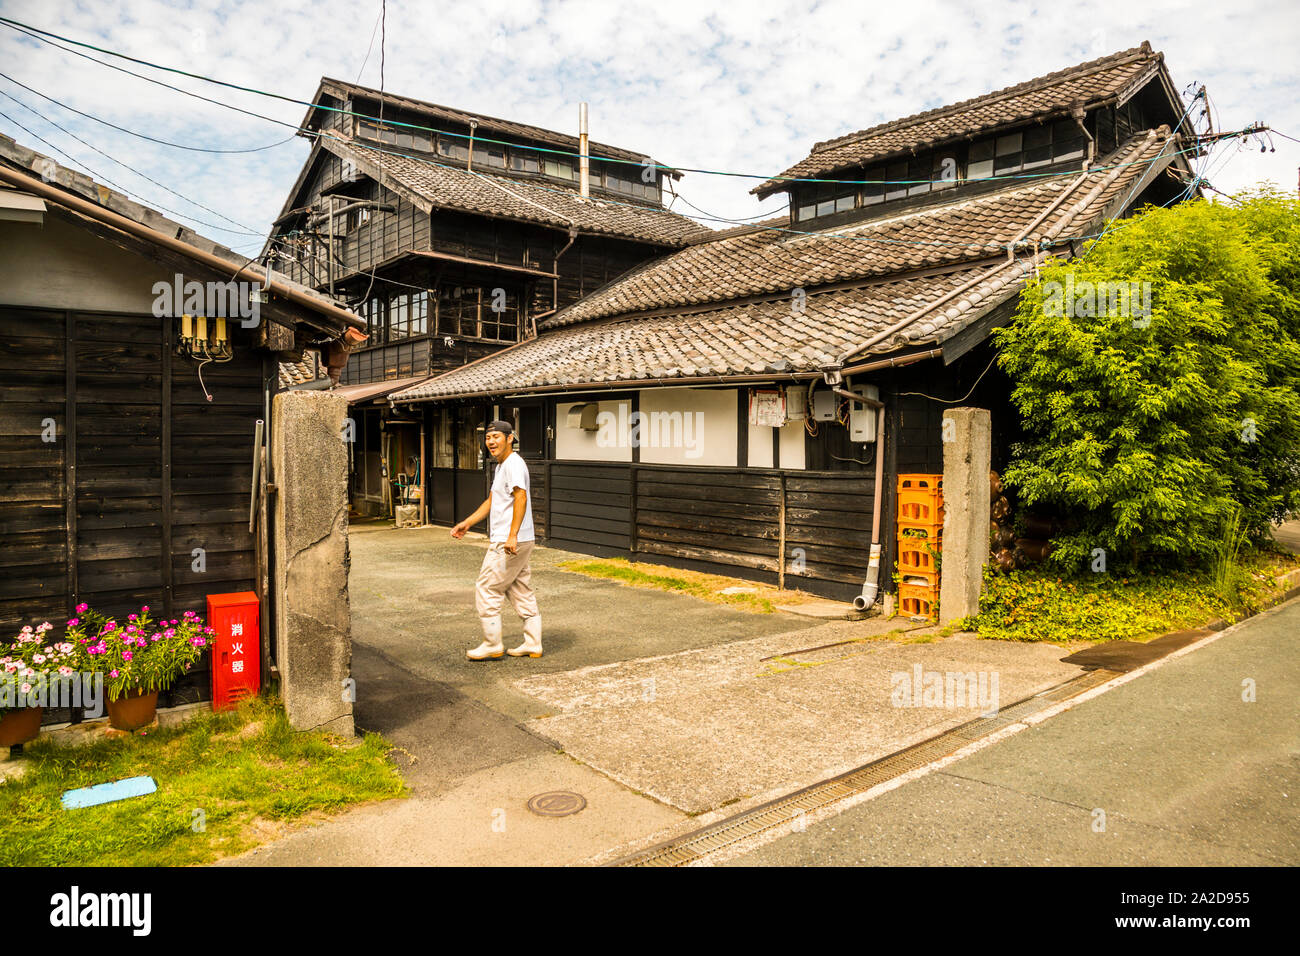 Herstellung von japanischer Sojasauce in 1872 Mejiiya Shoyu Manufaktur in Hamamatsu, Japan. Selten sieht man diese alten traditionellen Häuser in Japan noch immer. Dieses hat drei Etagen, aus Zedernholz gebaut. Die unterschiedlichen Höhen der Produktionsräume werden im Herstellungsprozess verwendet Stockfoto